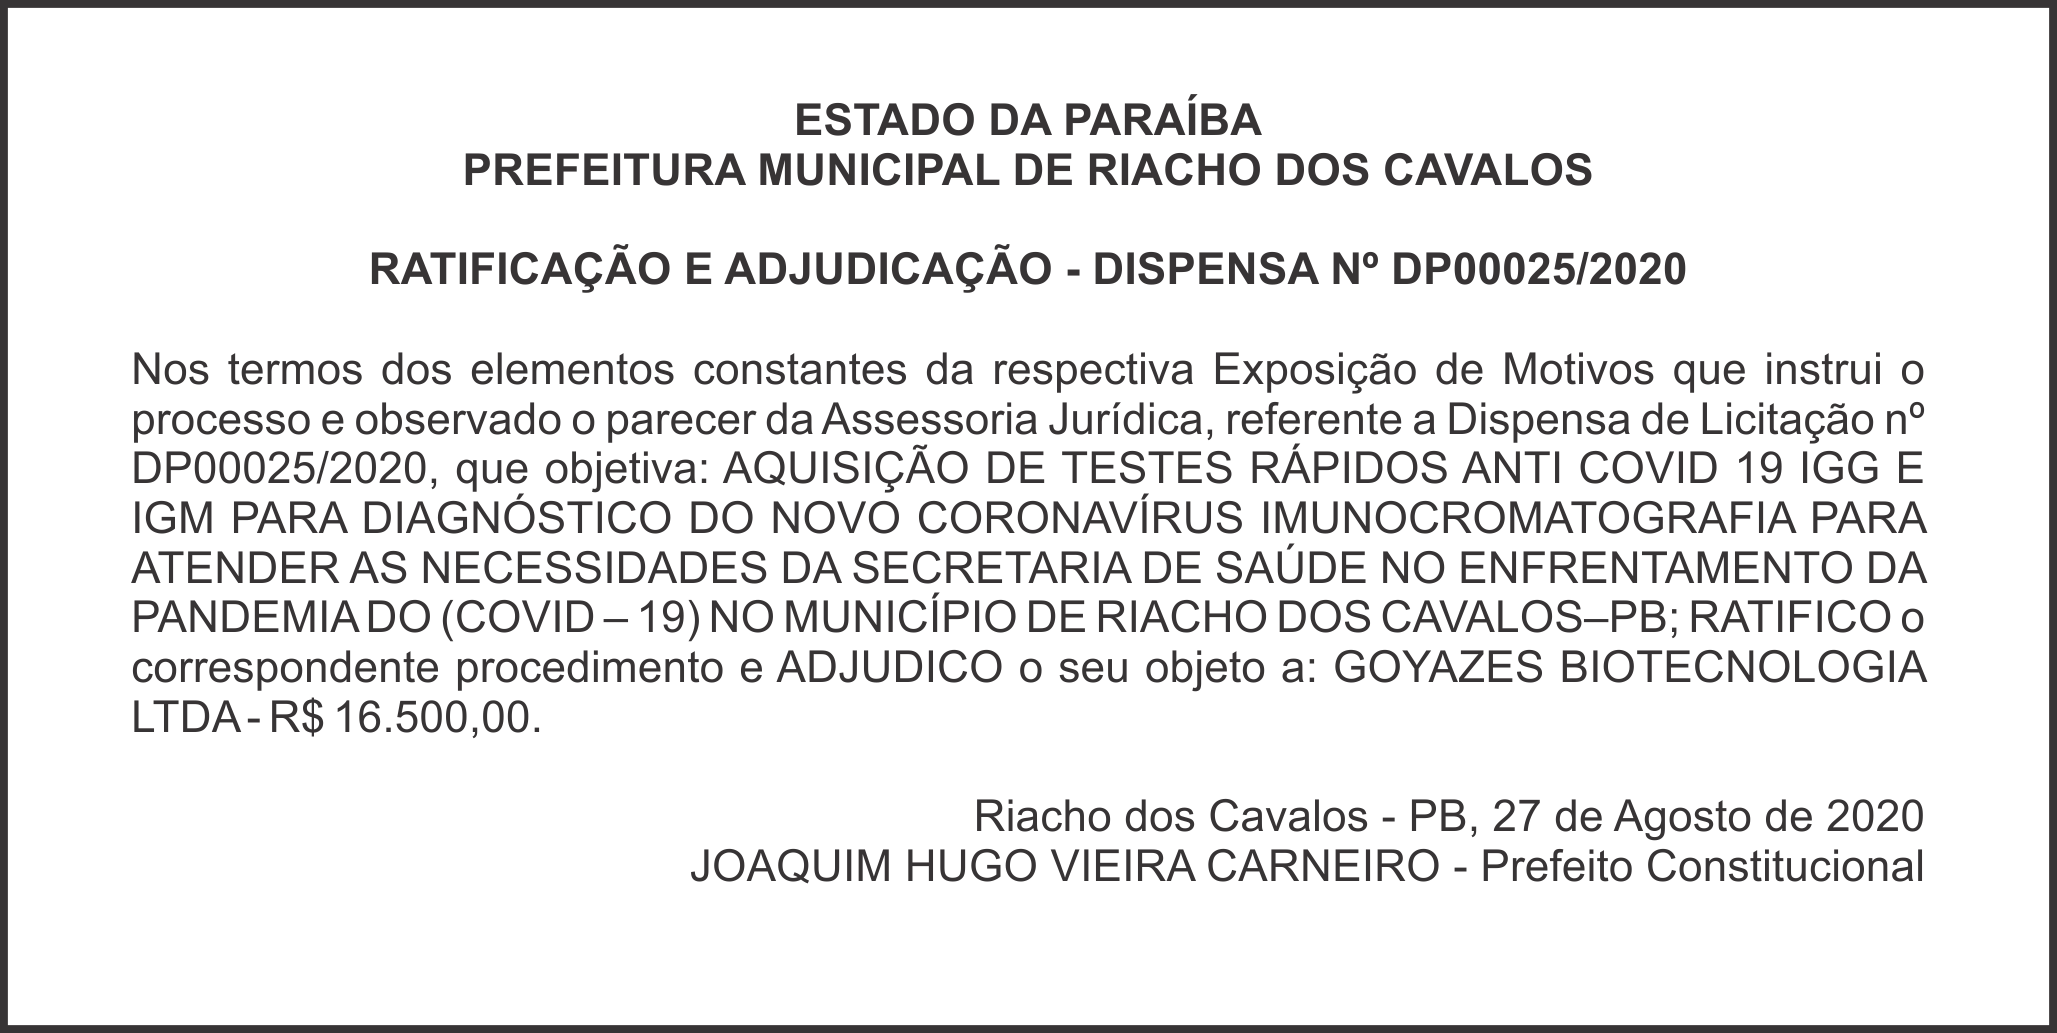 PREFEITURA MUNICIPAL DE RIACHO DOS CAVALOS – RATIFICAÇÃO E ADJUDICAÇÃO – DISPENSA Nº DP00025/2020